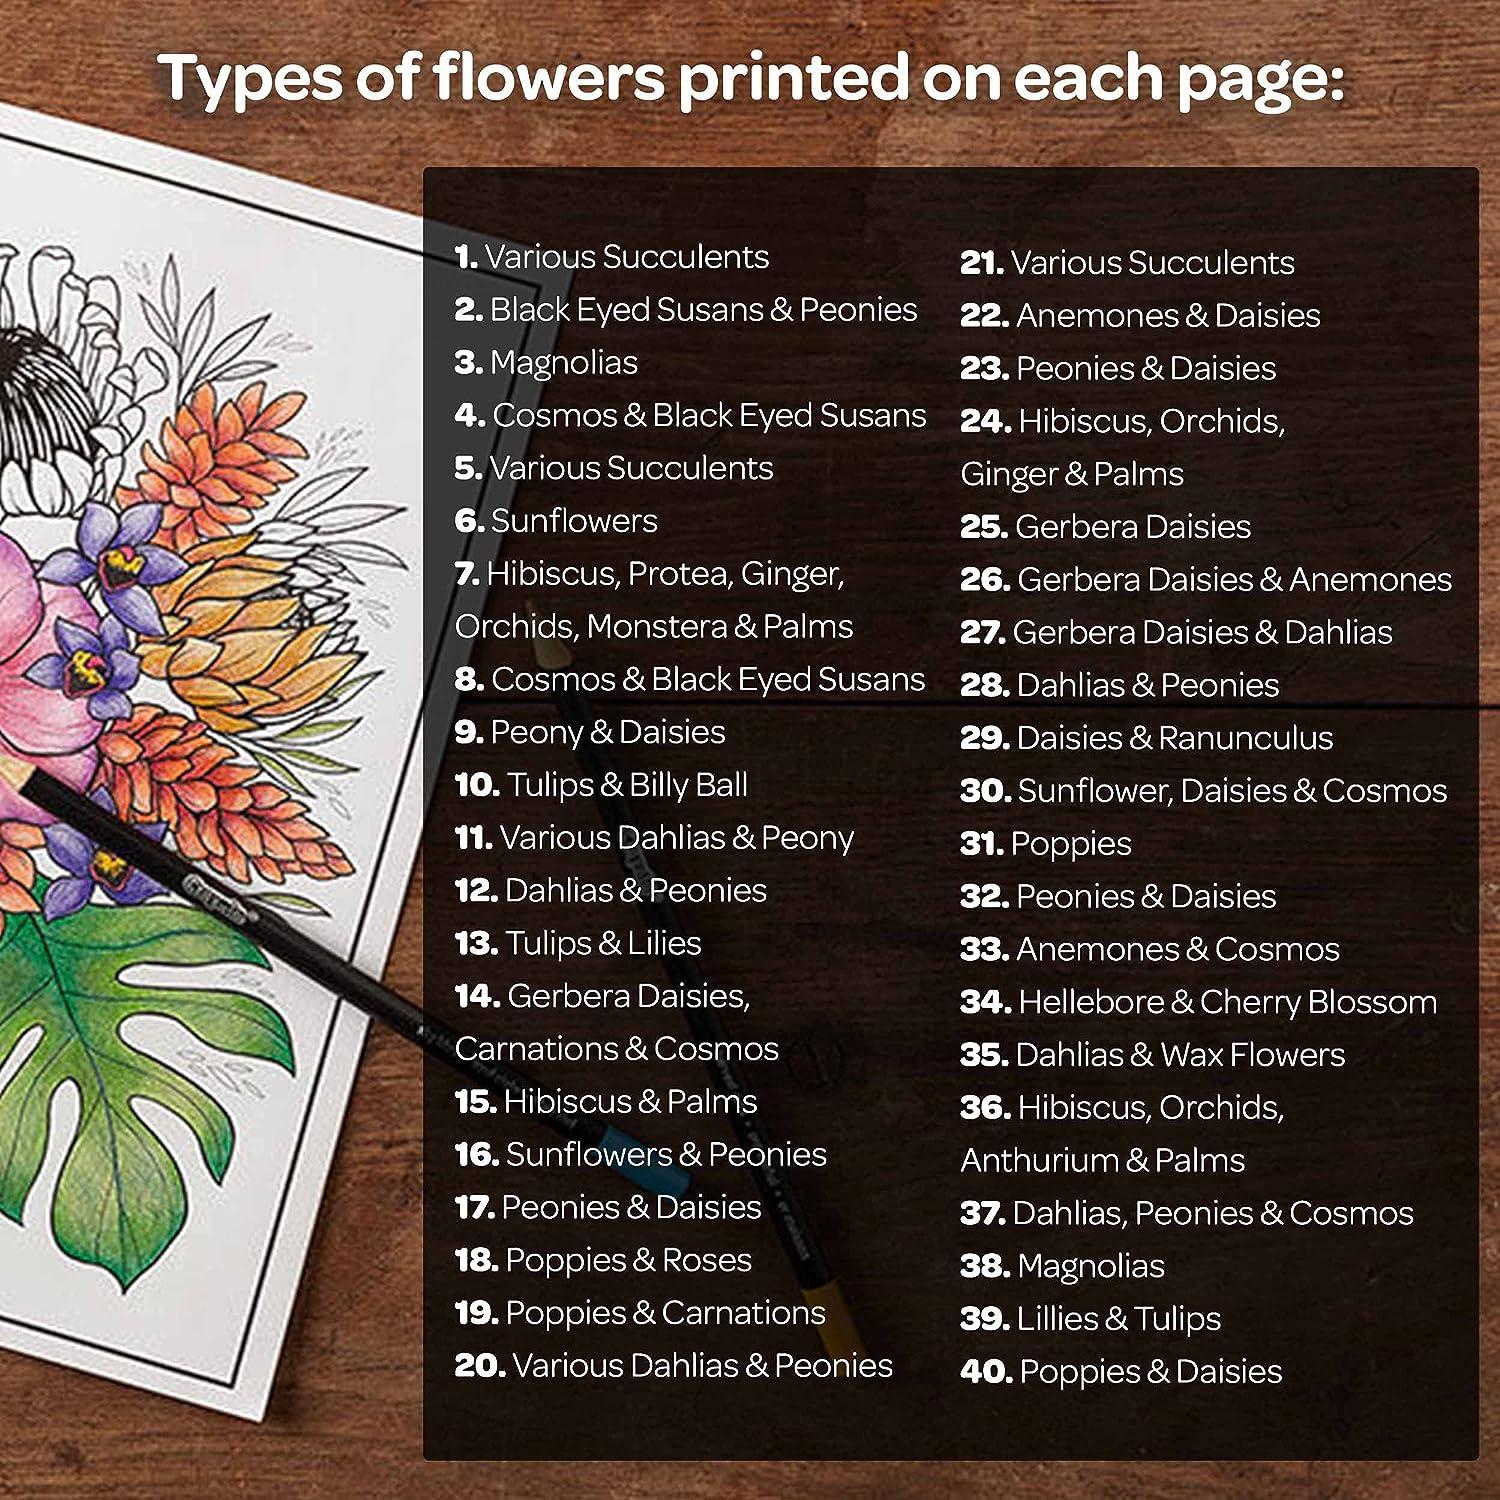 Crayola Coloring Book, Florals